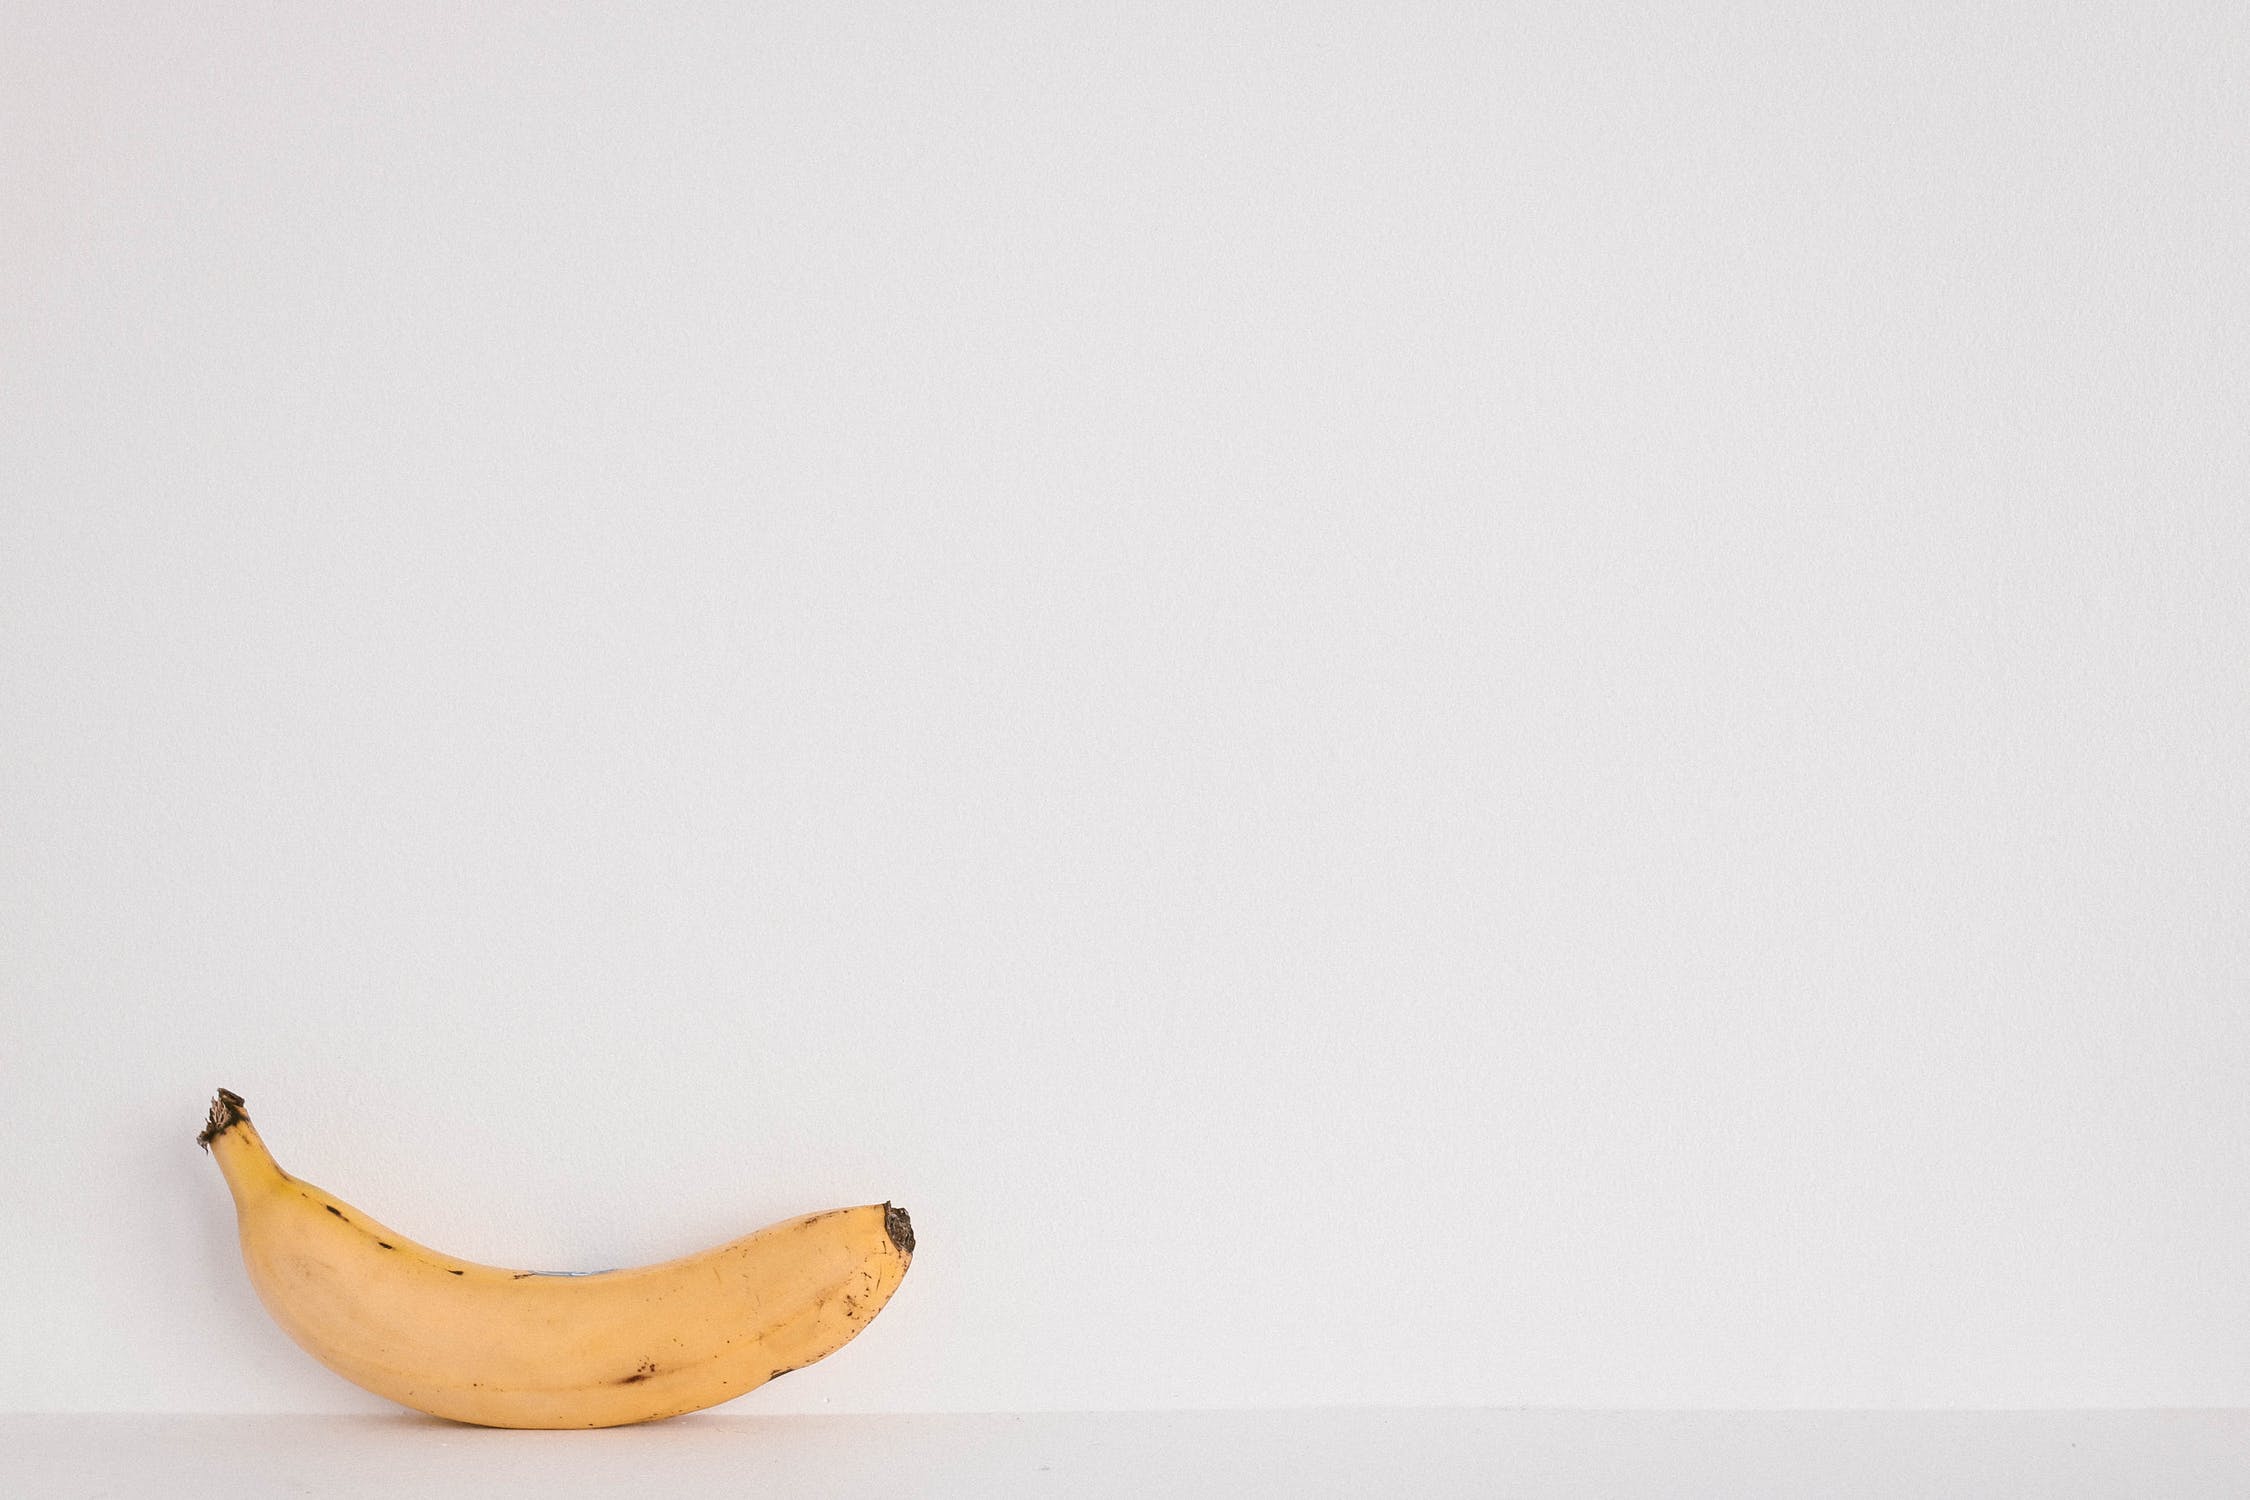 De leukste weetjes over bananen op Bananendag